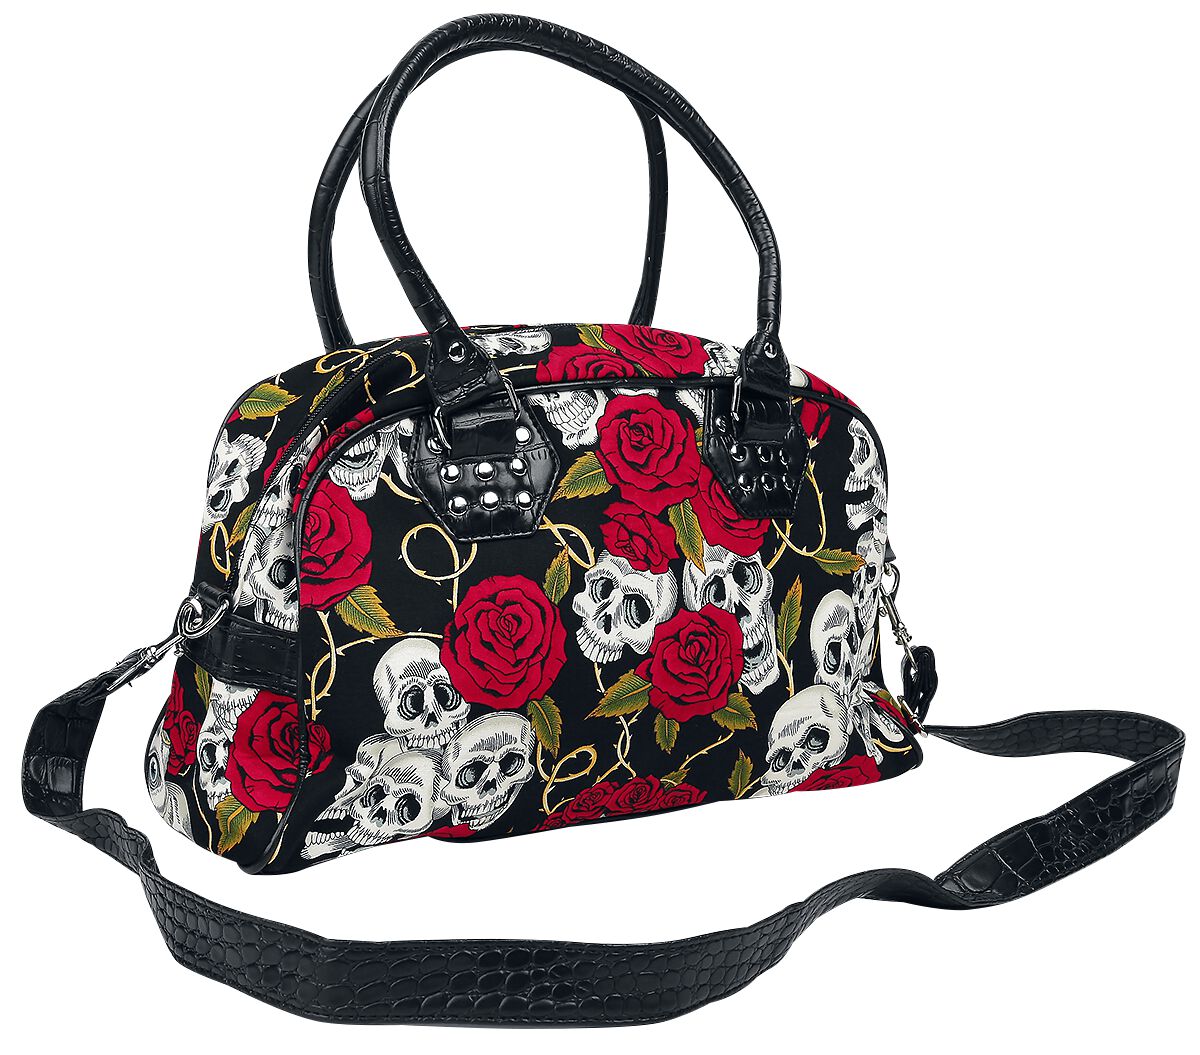 Banned Alternative - Gothic Handtasche - Skulls And Roses - für Damen - schwarz